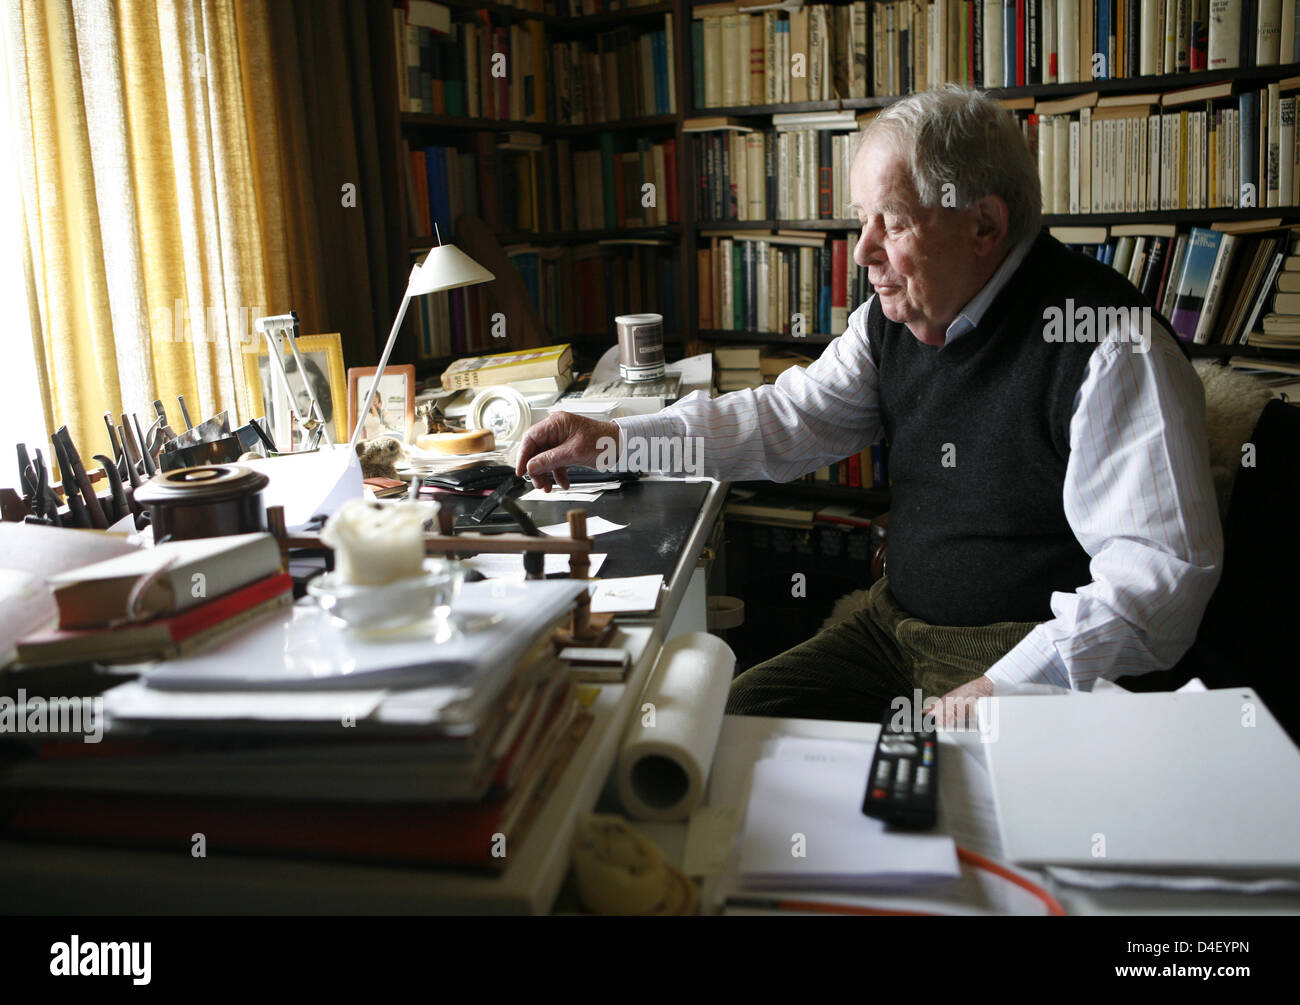 Autore tedesco Siegfried Lenz alla sua scrivania nella parte anteriore del libro scaffali nel suo appartamento Hamburg-Othmarschen, Germania, 23 maggio 2008. Foto: Jens remendo Foto Stock